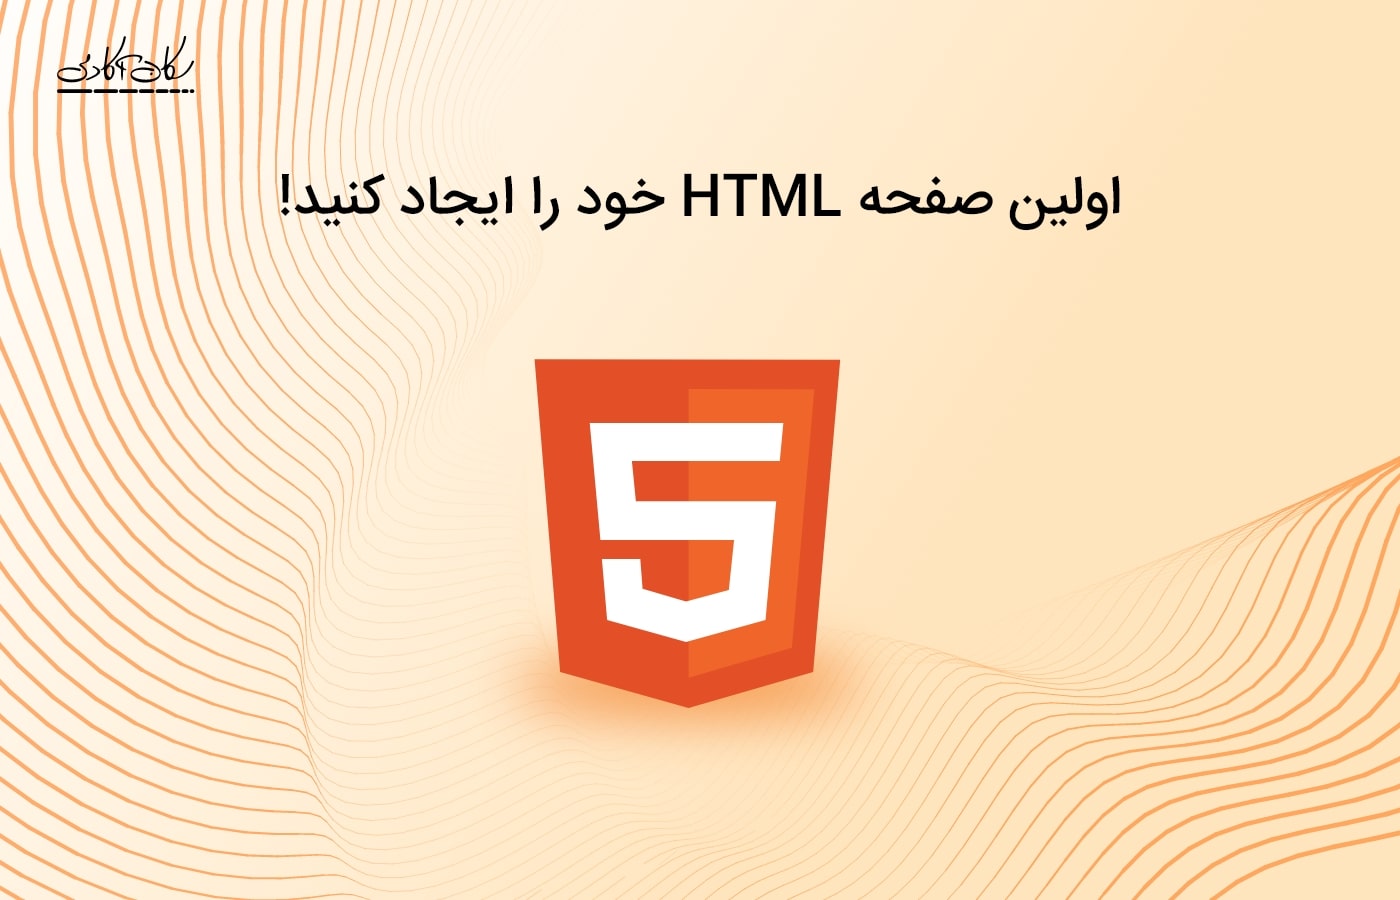 اولین صفحه HTML ت رو ایجاد کن!